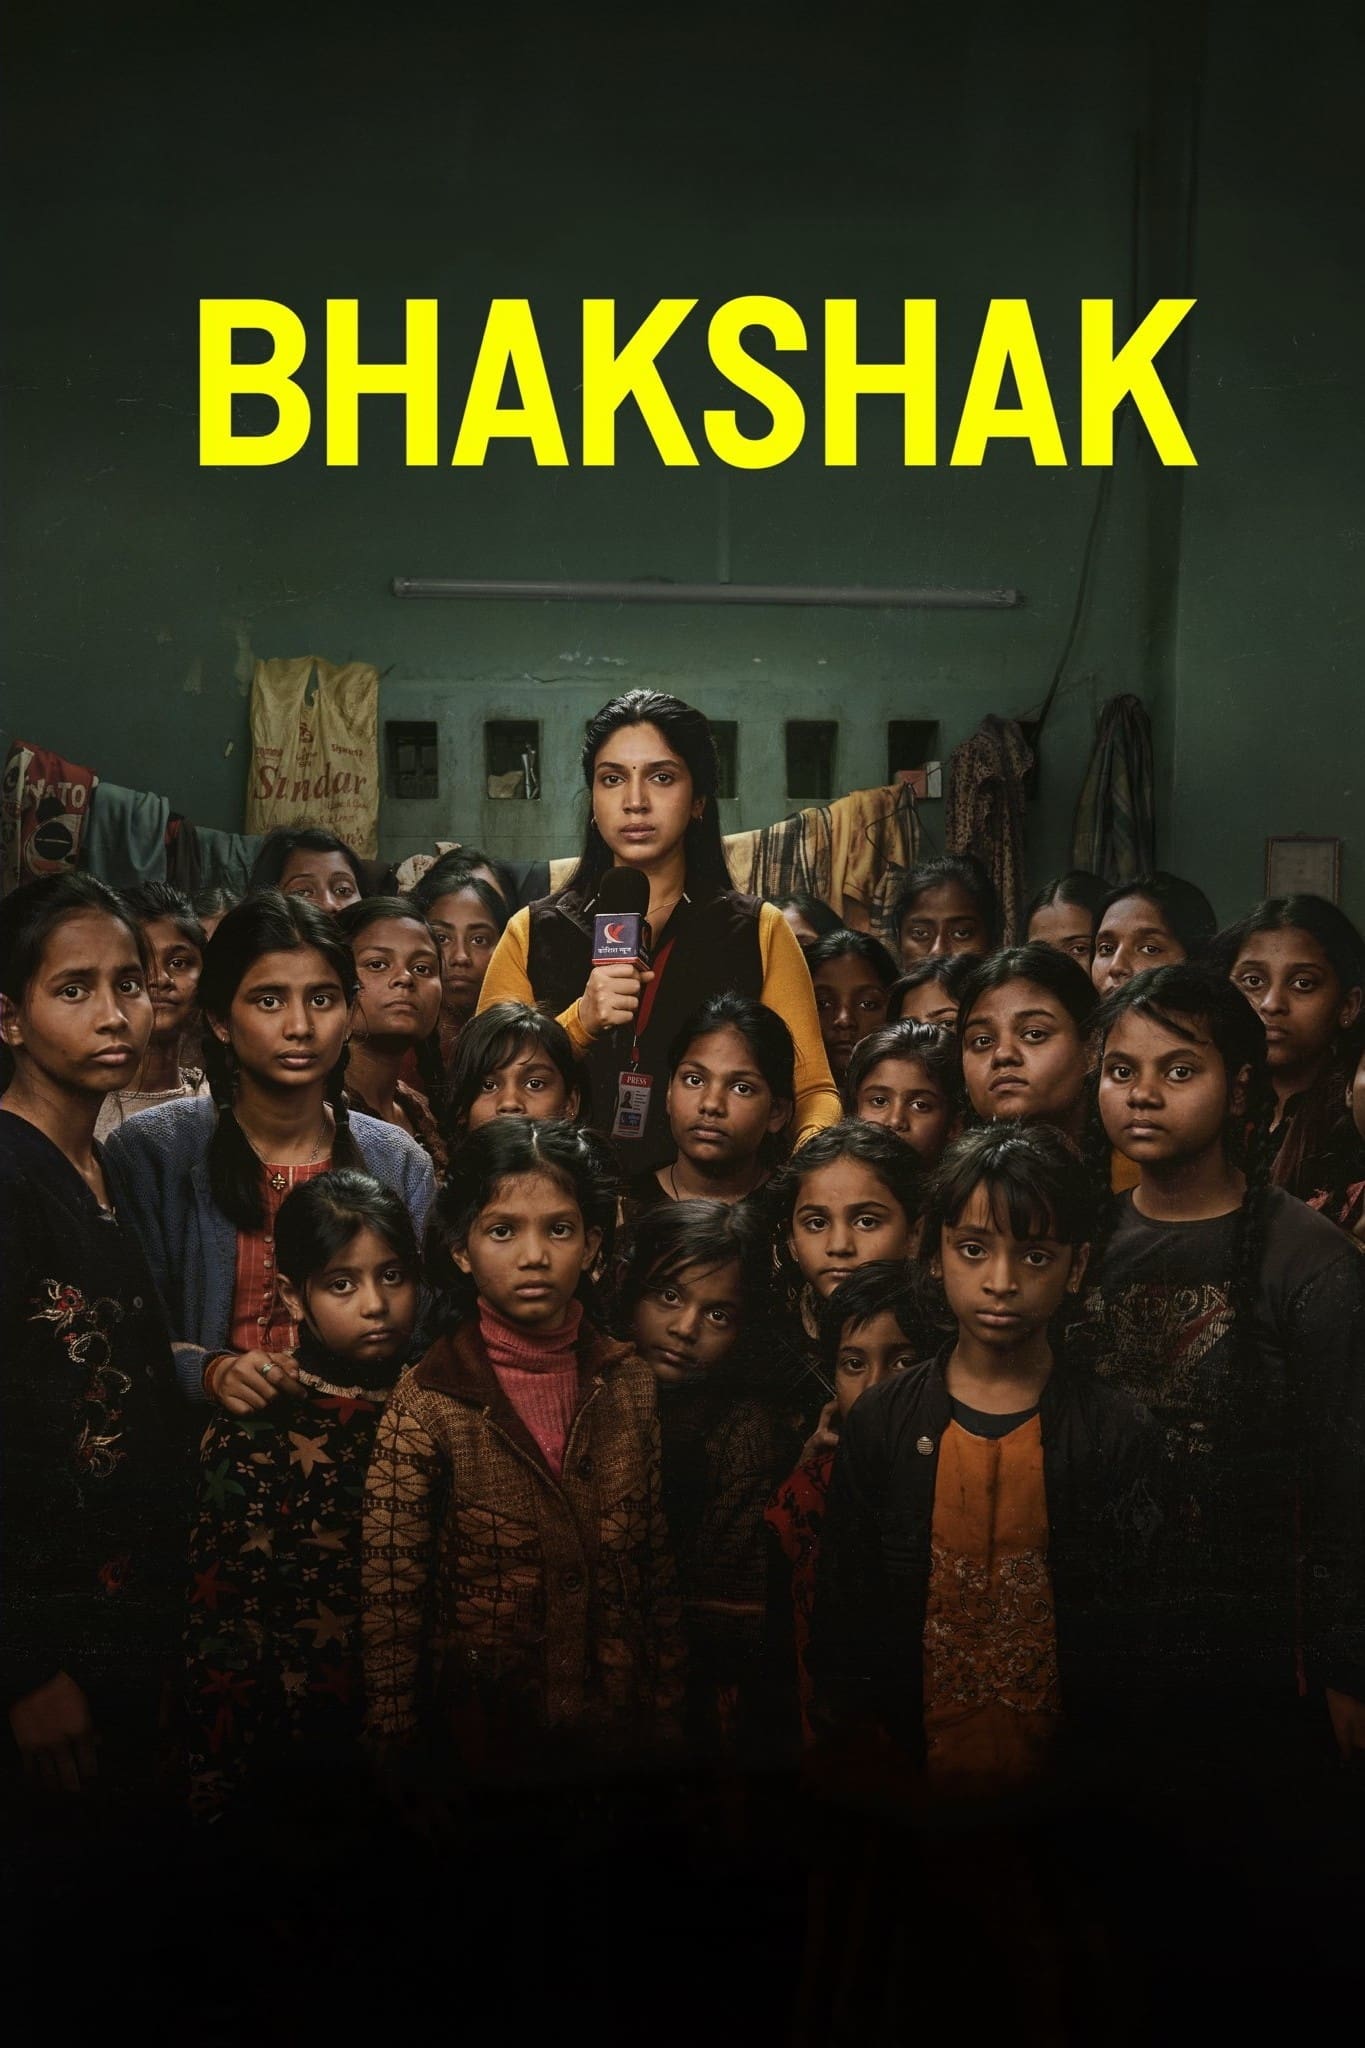 Poster for the movie "Bhakshak"